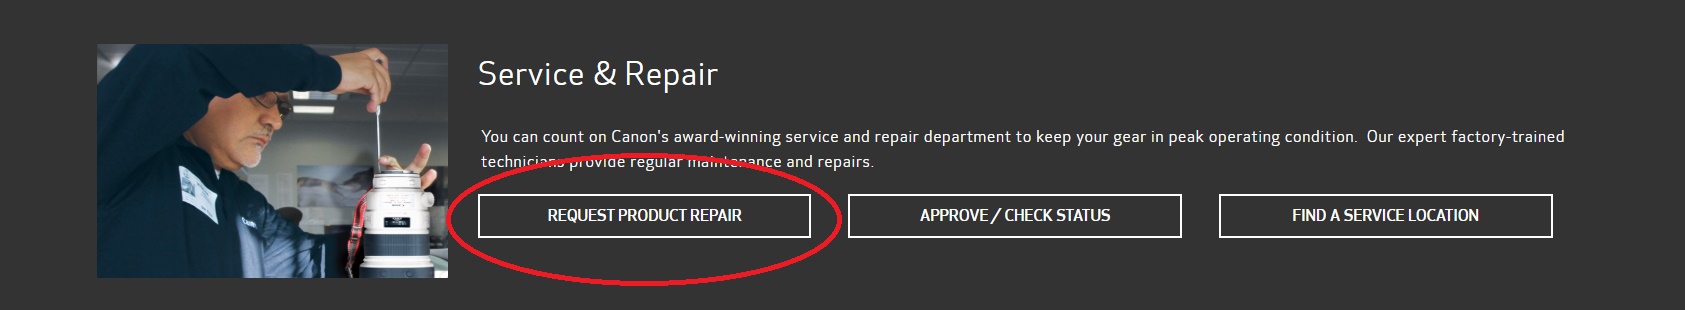 Request Product Repair